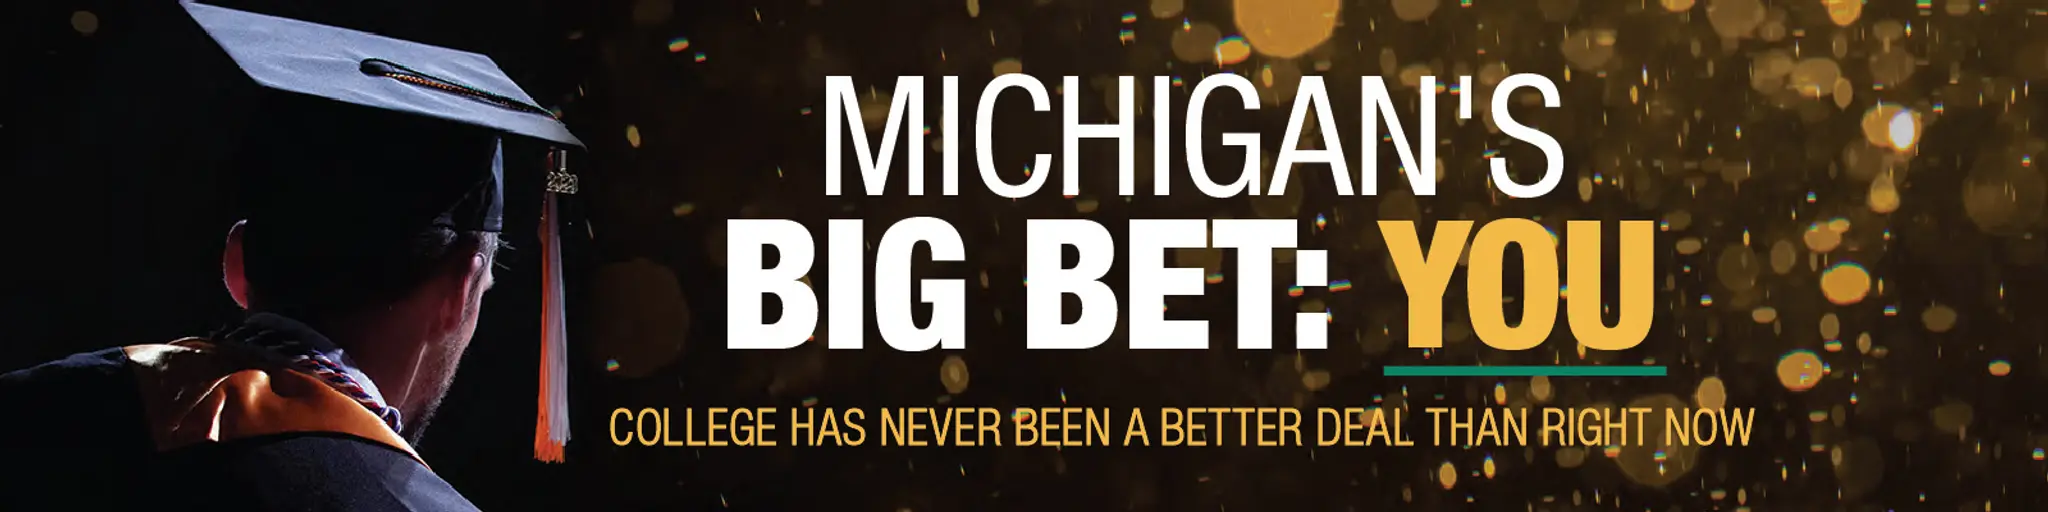 Michigan's big bet: YOU